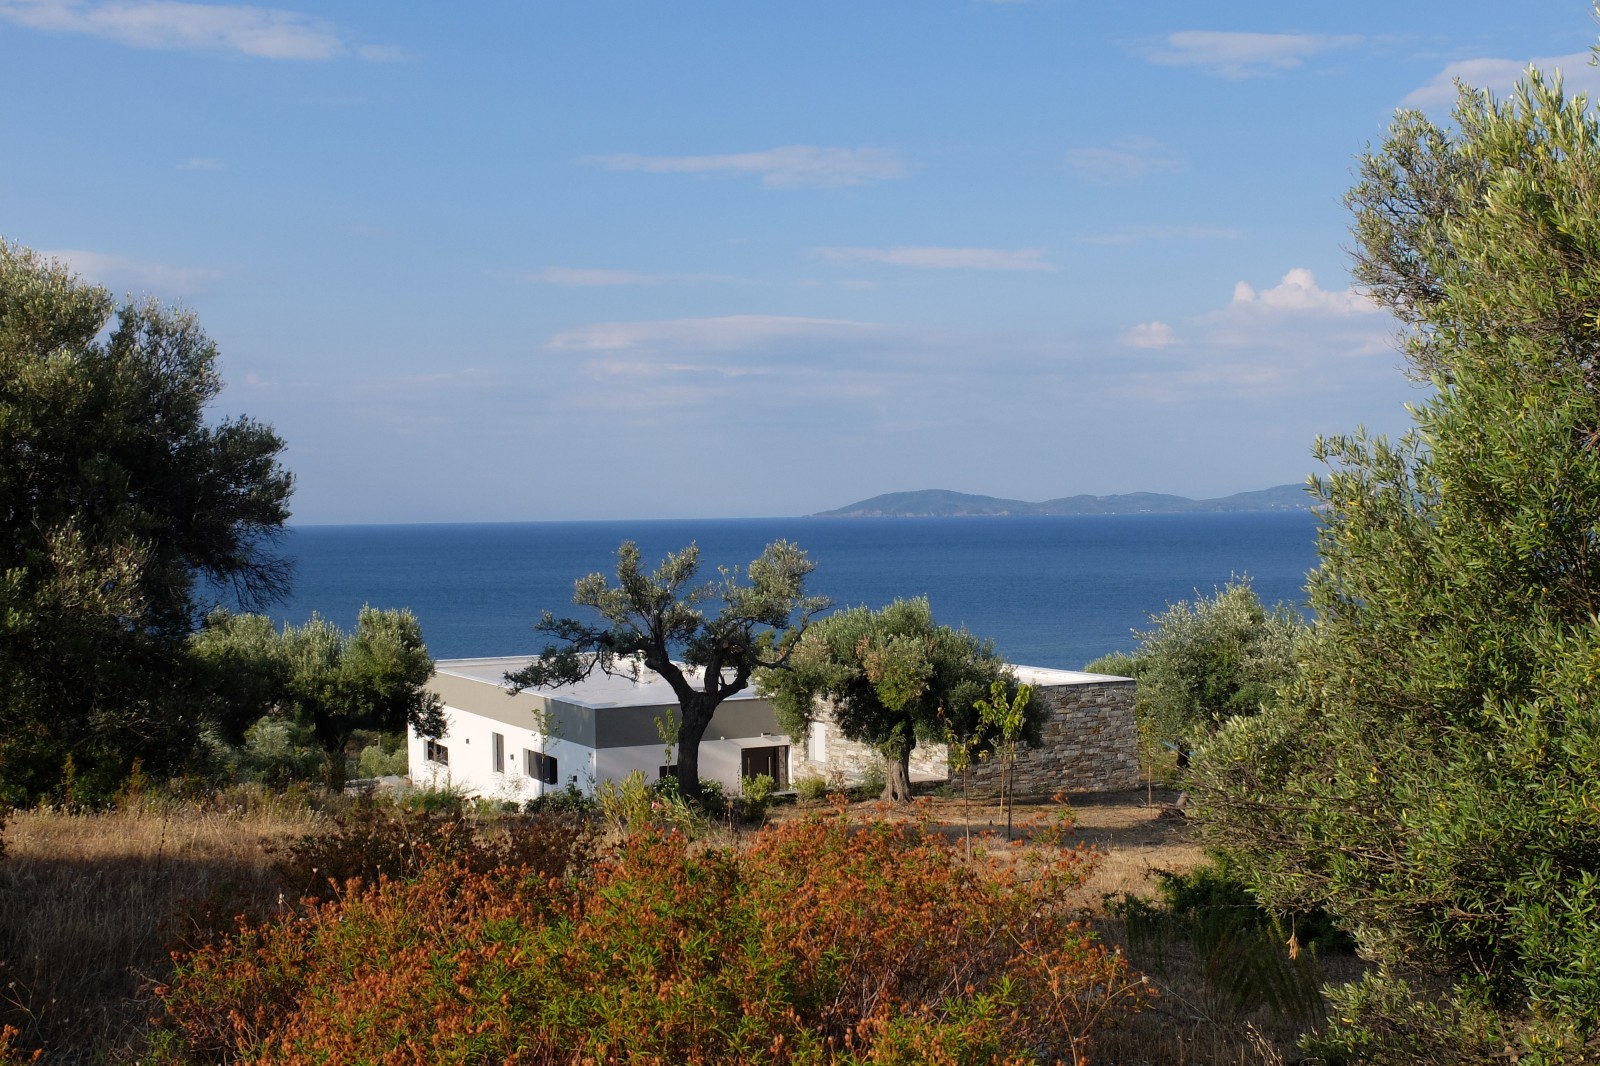 Ferienhaus in Griechenland